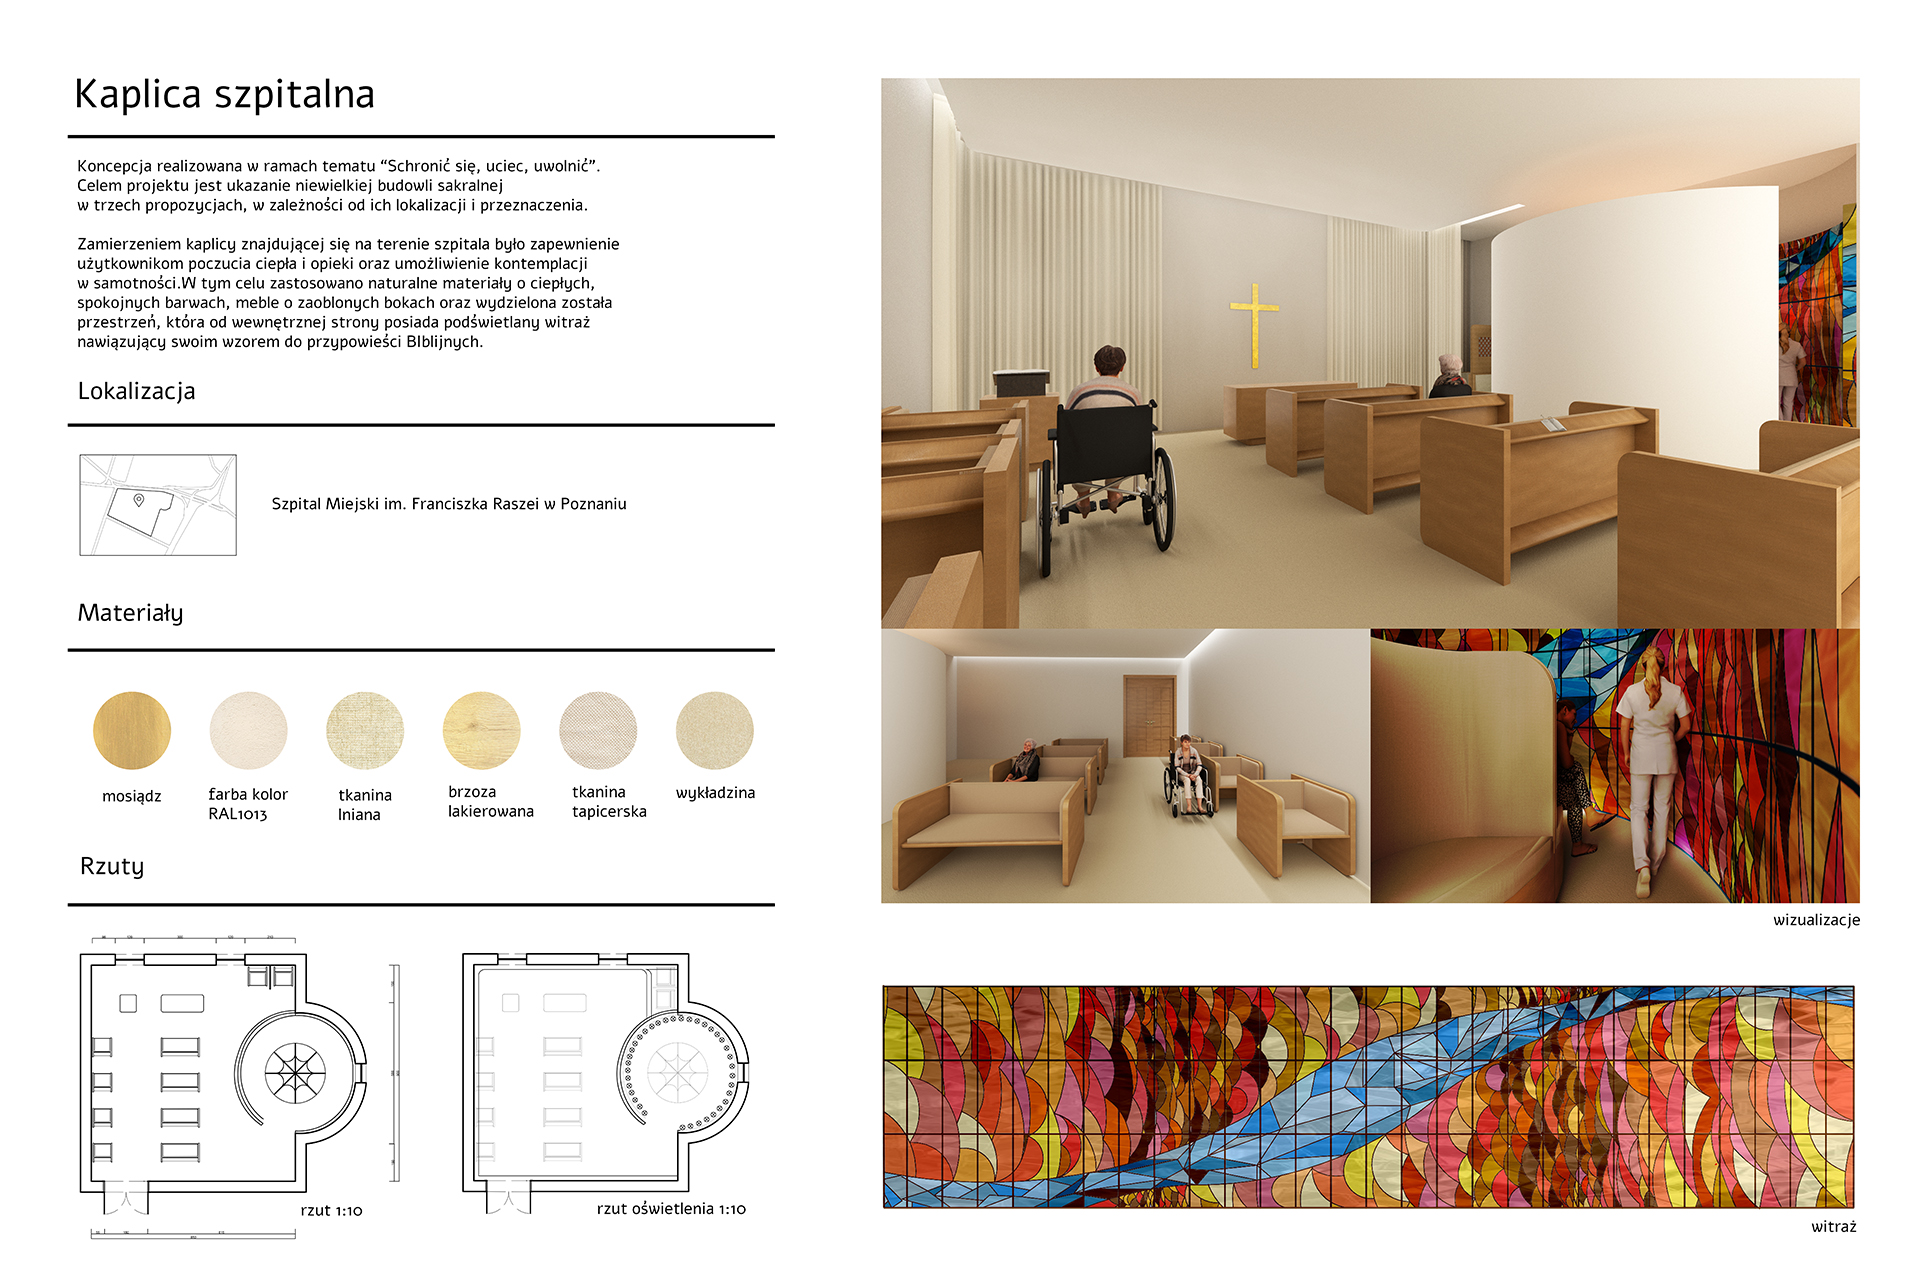 Projekt koncepcyjny wnętrza kaplicy szpitalnej zawierający mapę lokalizacyjną, cztery barwne wizualizacje, próbki materiałów użytych we wnętrzu oraz rzut i barwny projekt witrażu zaprojektowanego na potrzeby przestrzeni.